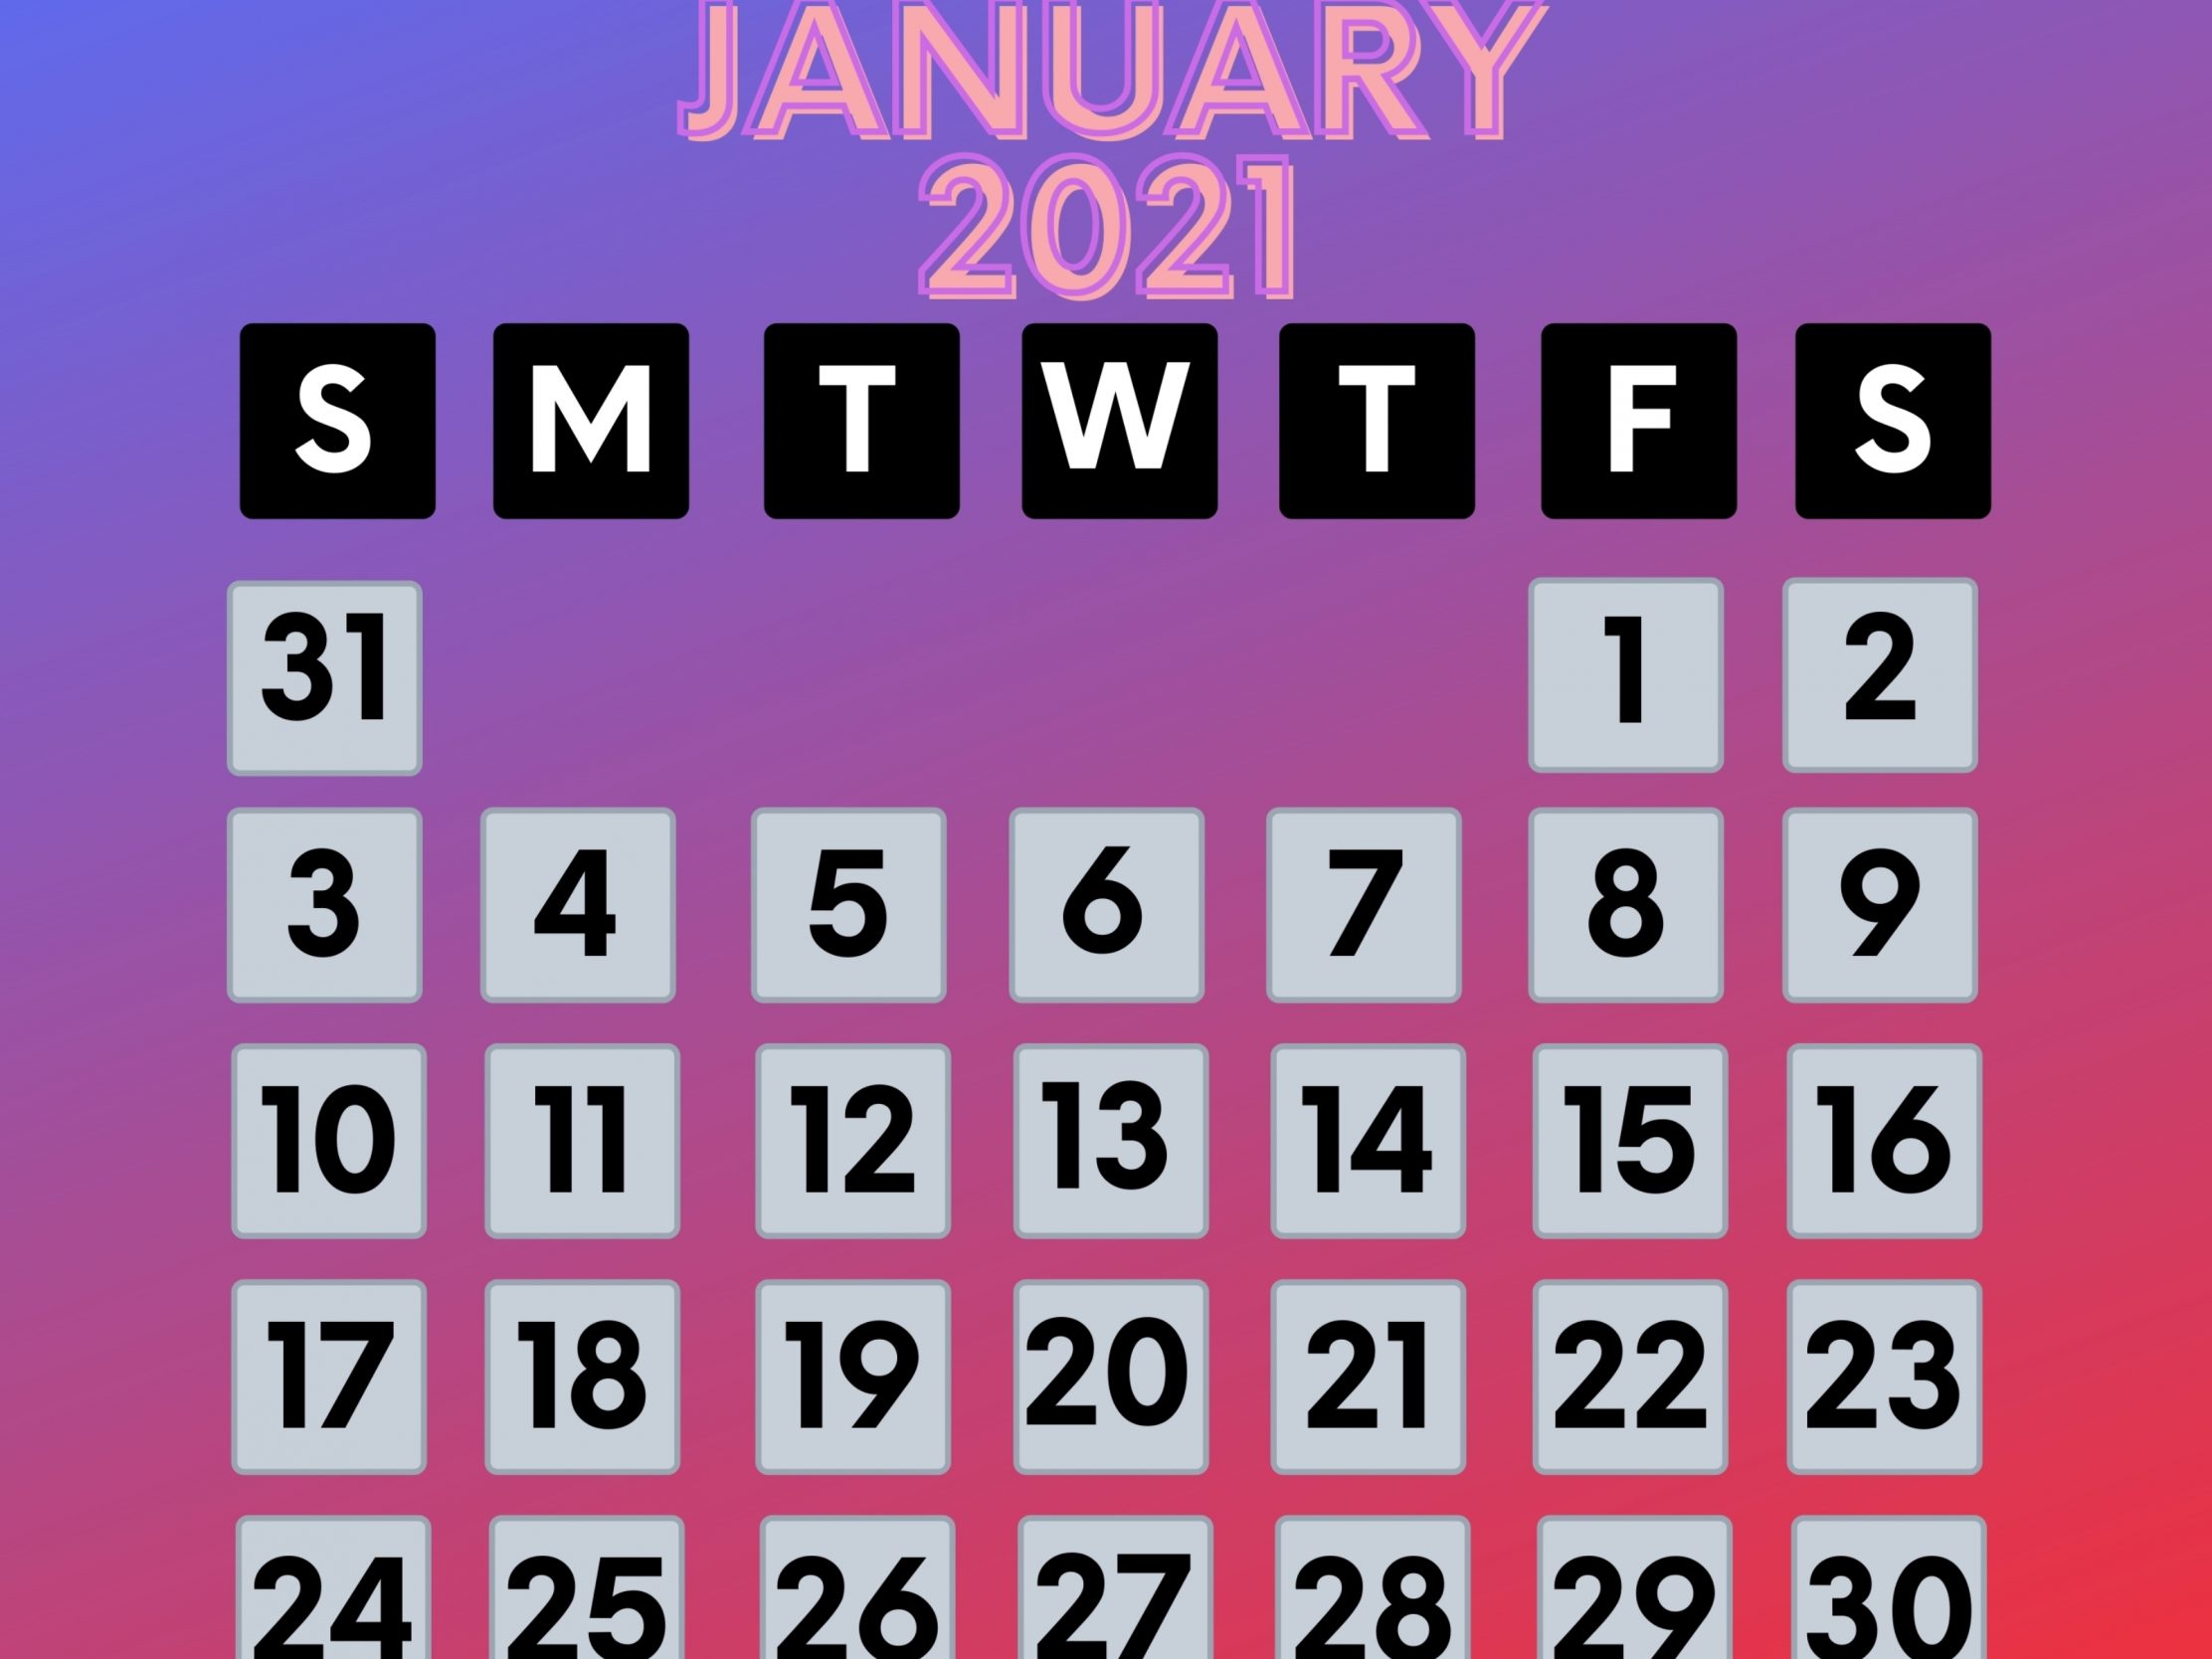 2224x1668 iPad Pro wallpapers January 2021 Calendar iPad Wallpaper 2224x1668 pixels resolution